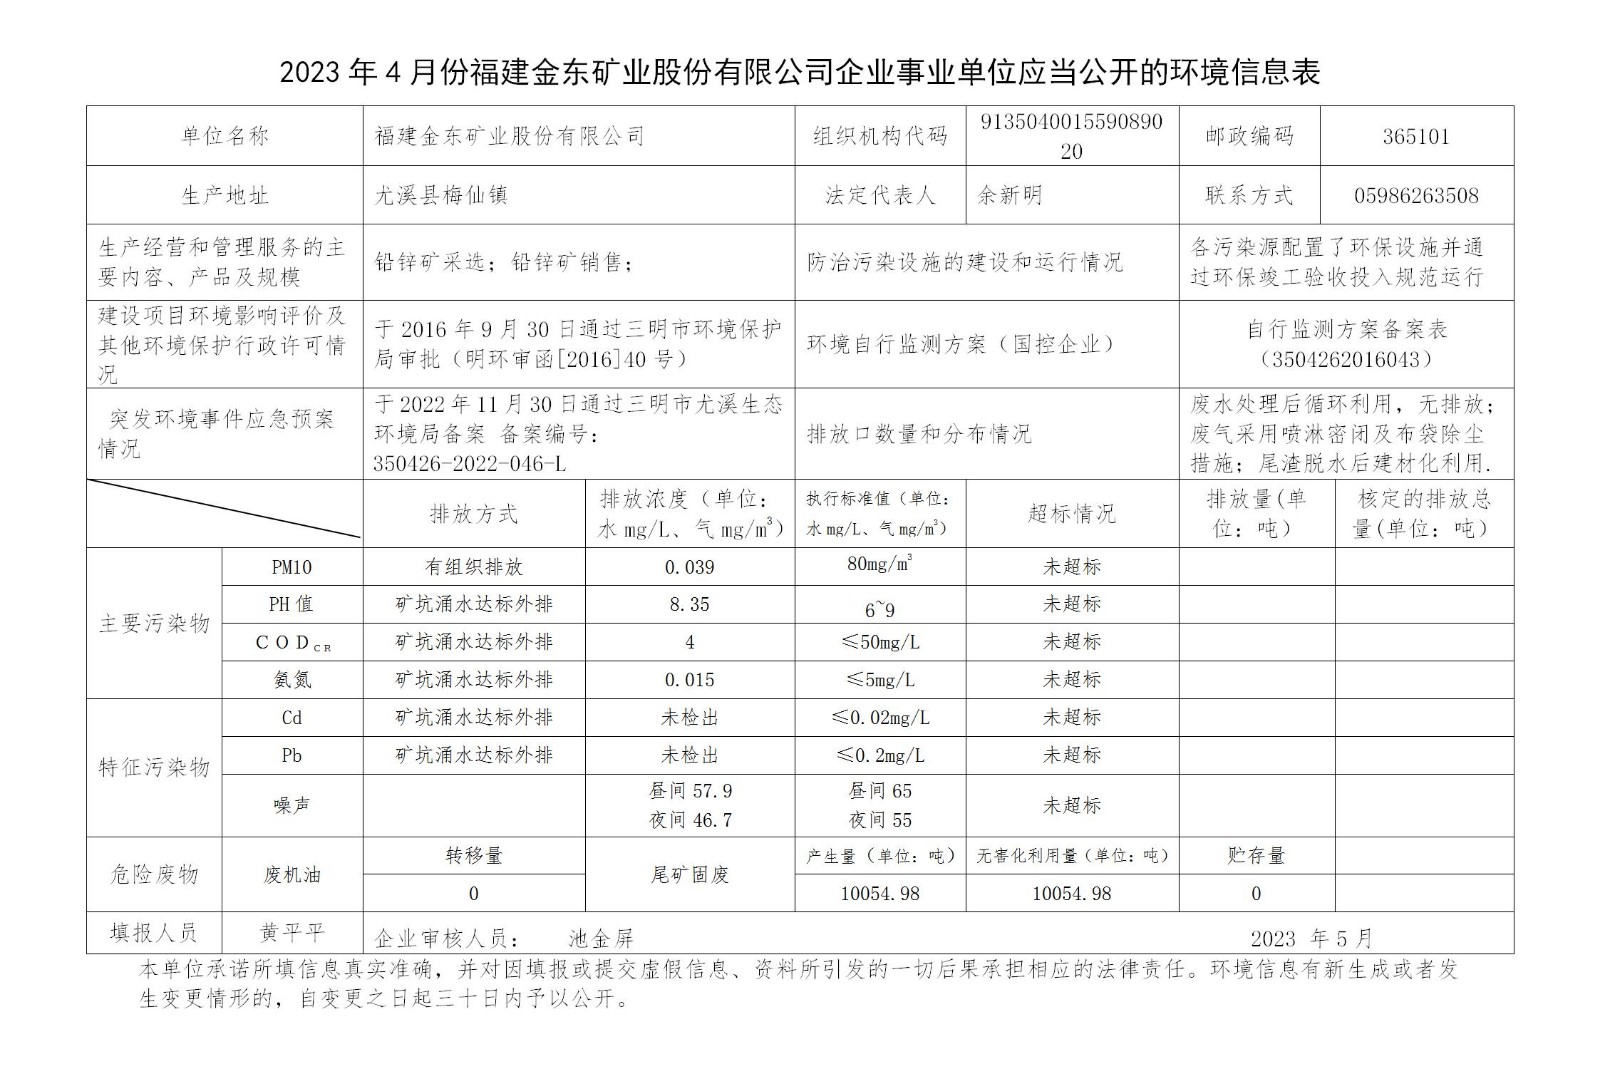 2023年4月份买球赛软件官网（中国）有限公司企业事业单位应当公开的环境信息表_01.jpg